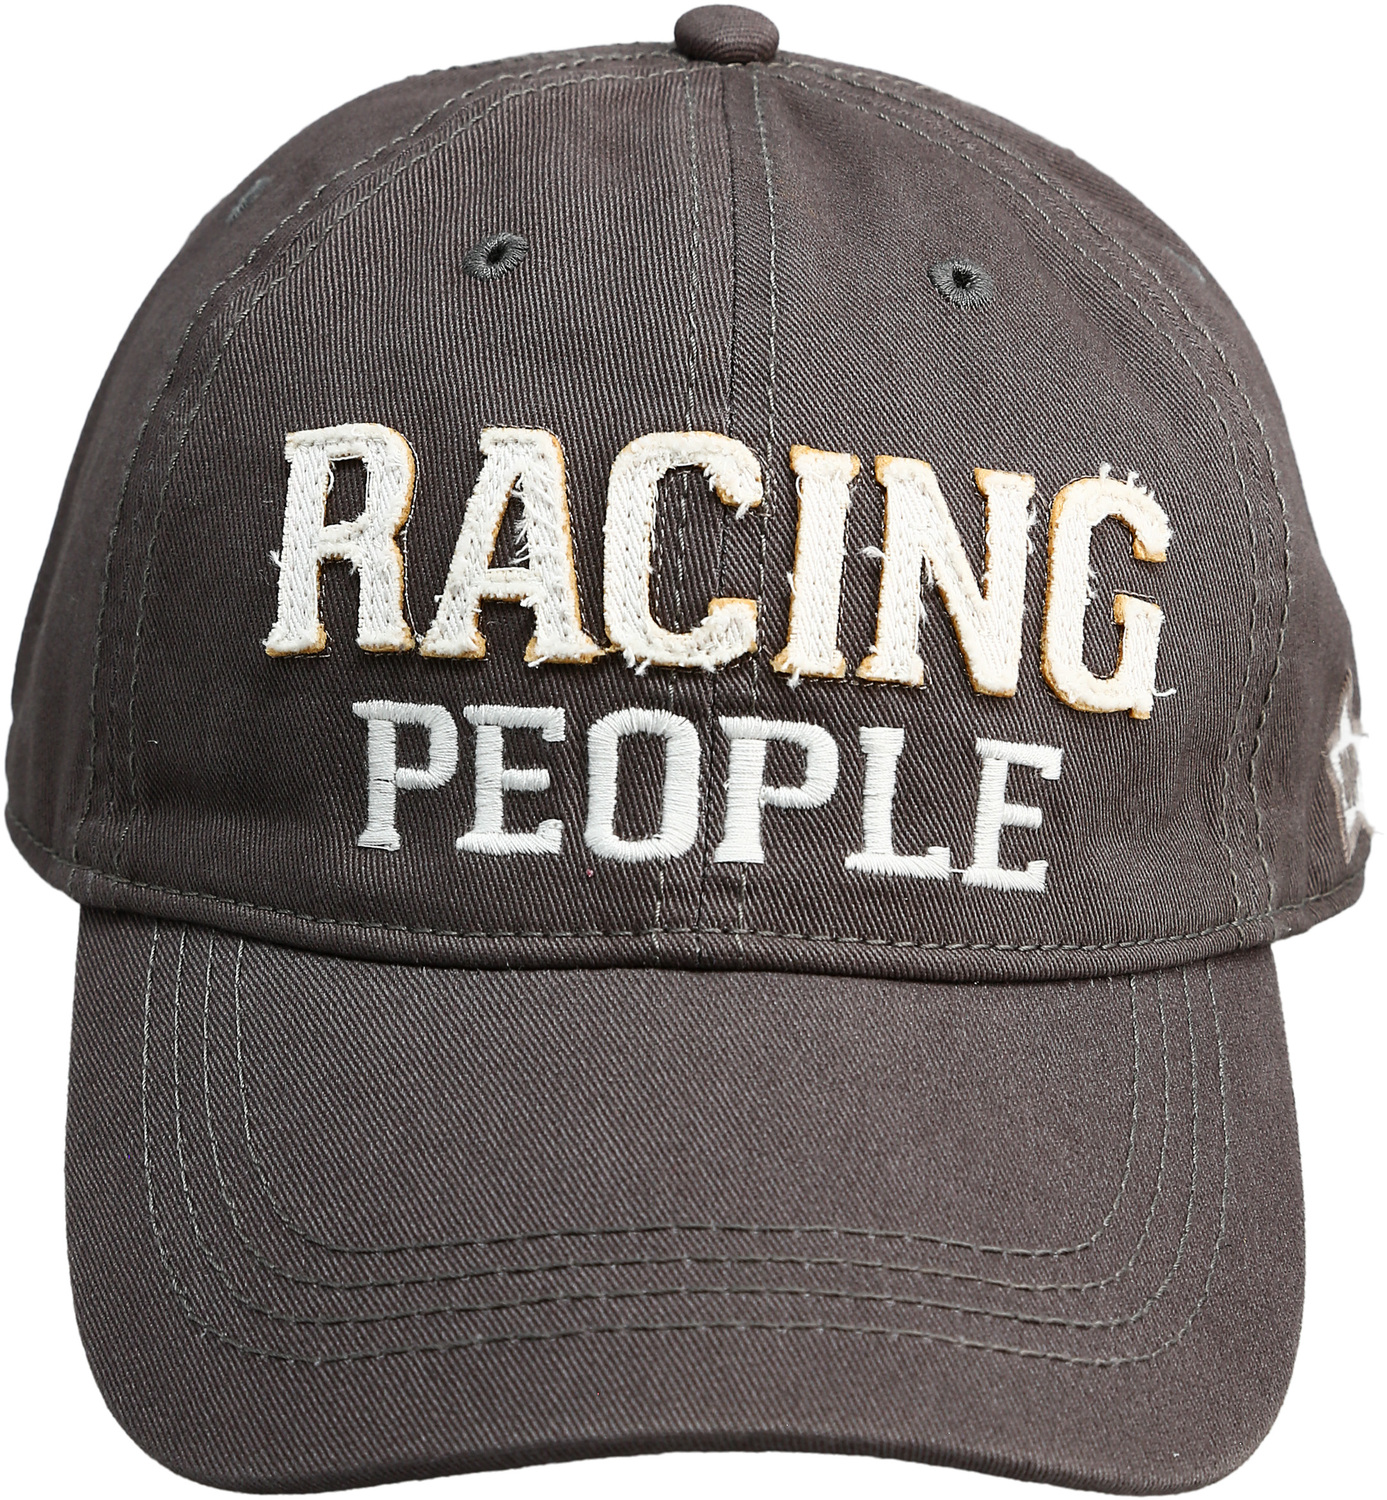 Racing People by We People - Racing People - Dark Gray Adjustable Hat